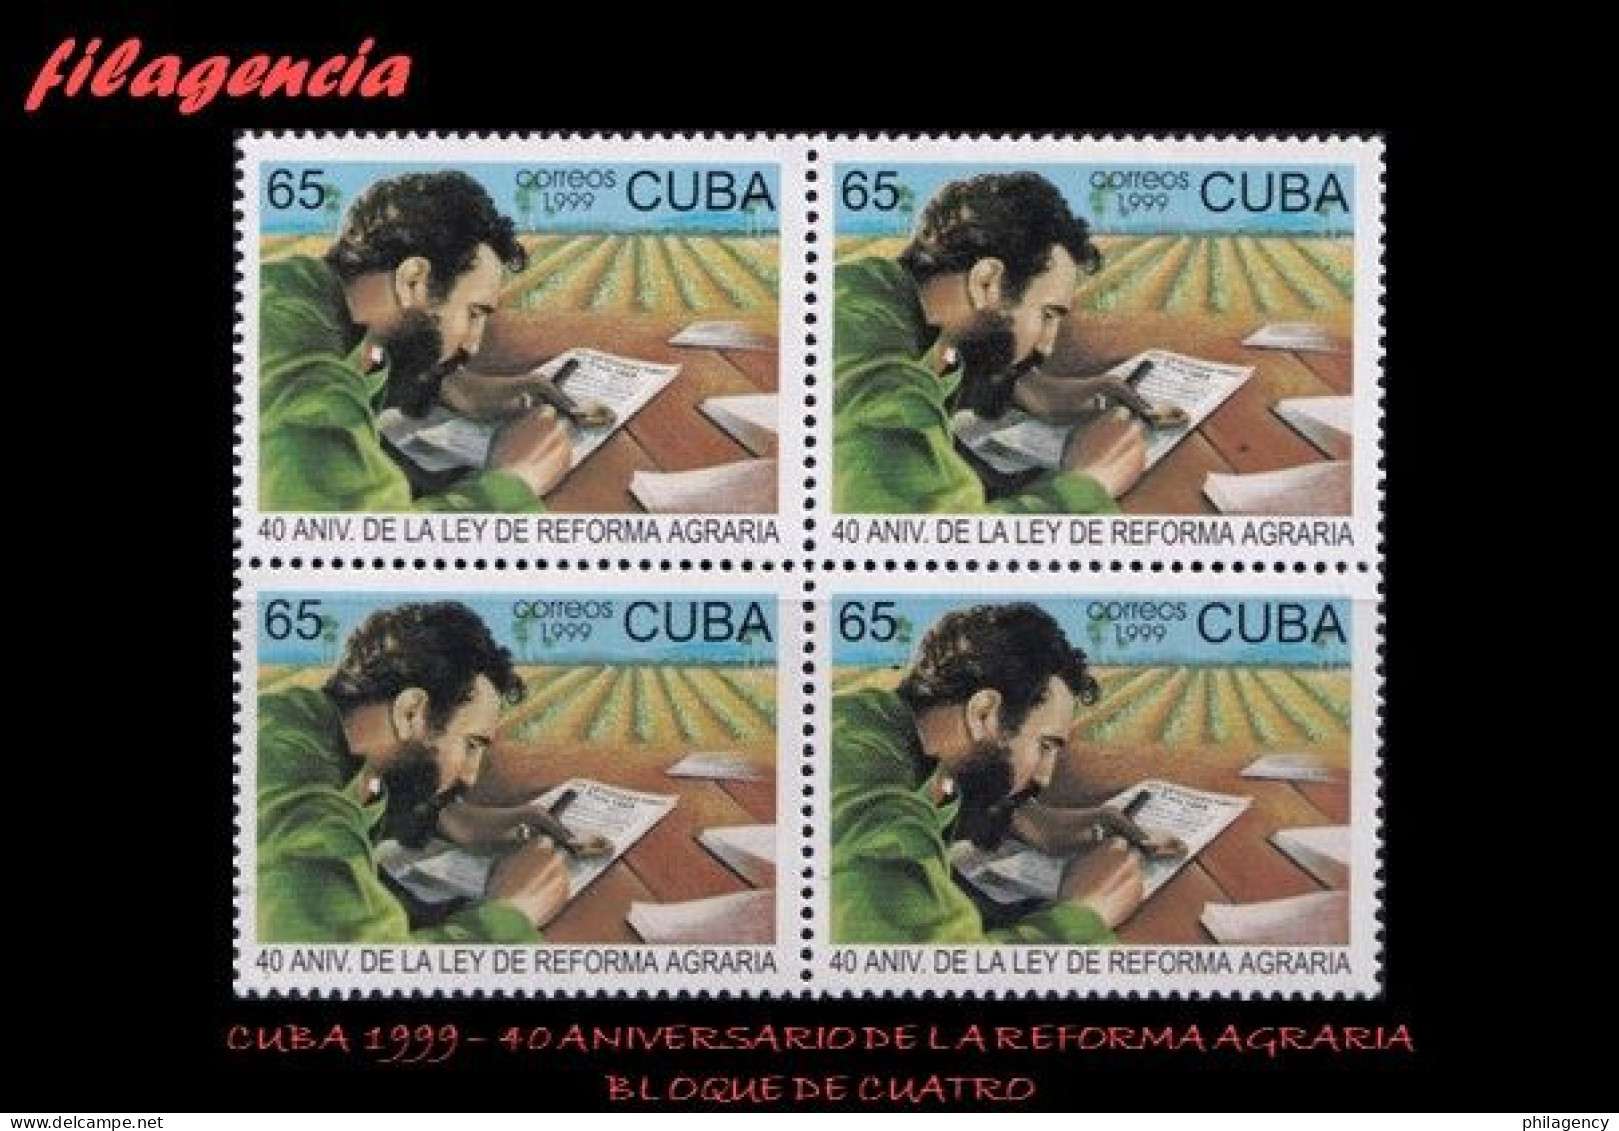 CUBA. BLOQUES DE CUATRO. 1999-14 40 ANIVERSARIO DE LA LEY DE REFORMA AGRARIA - Unused Stamps